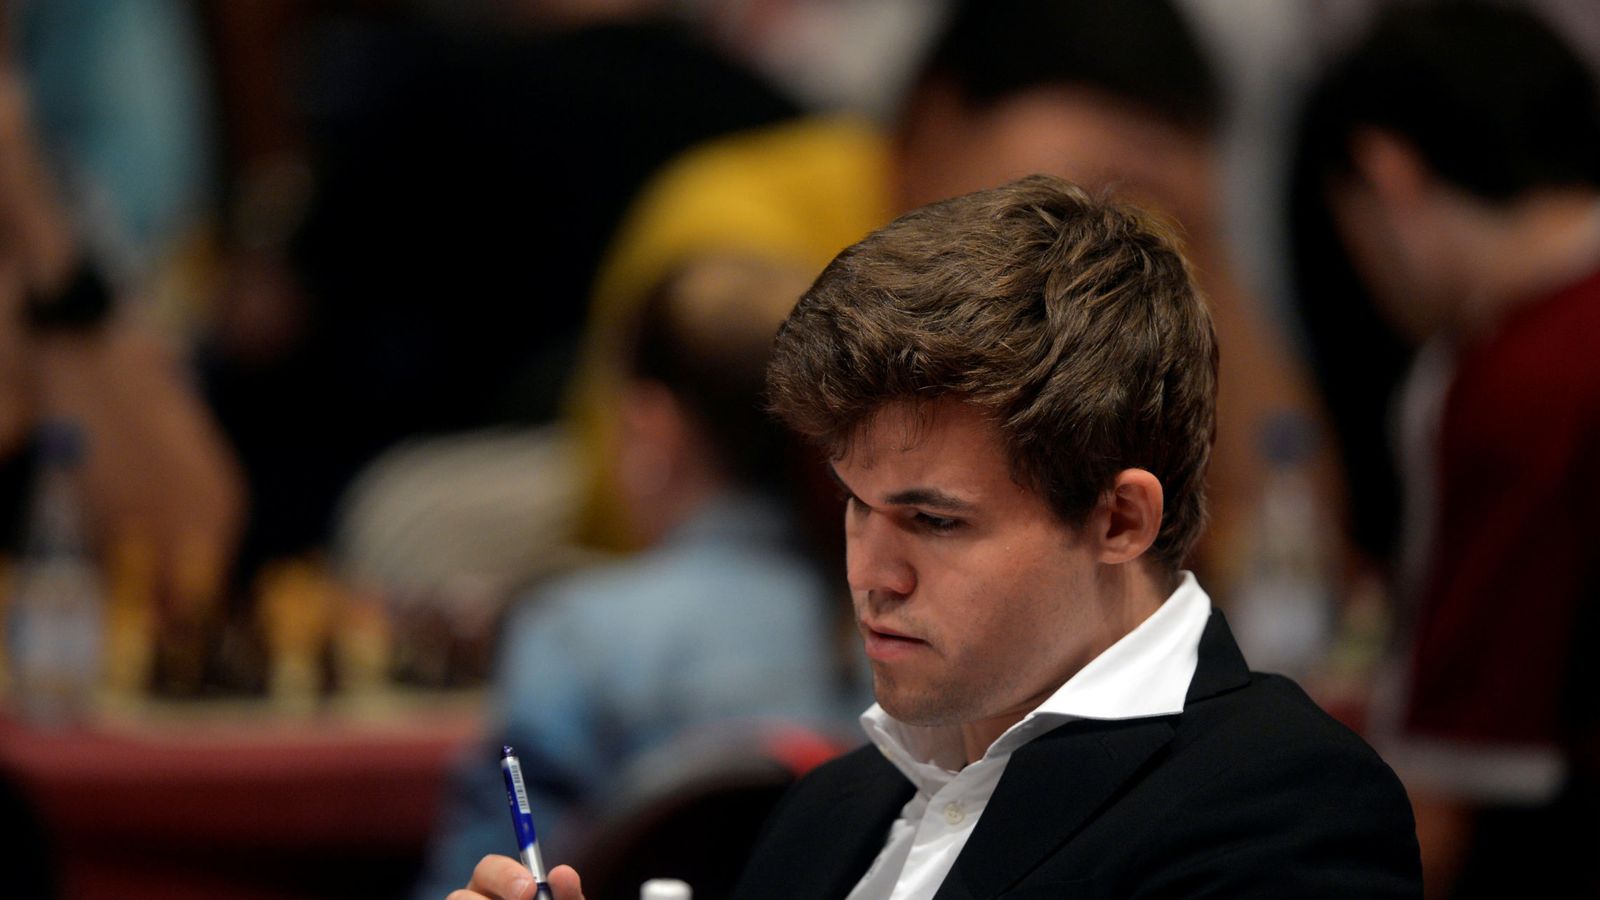 Foto: Magnus Carlsen, en la imagen durante una partida (Reuters)